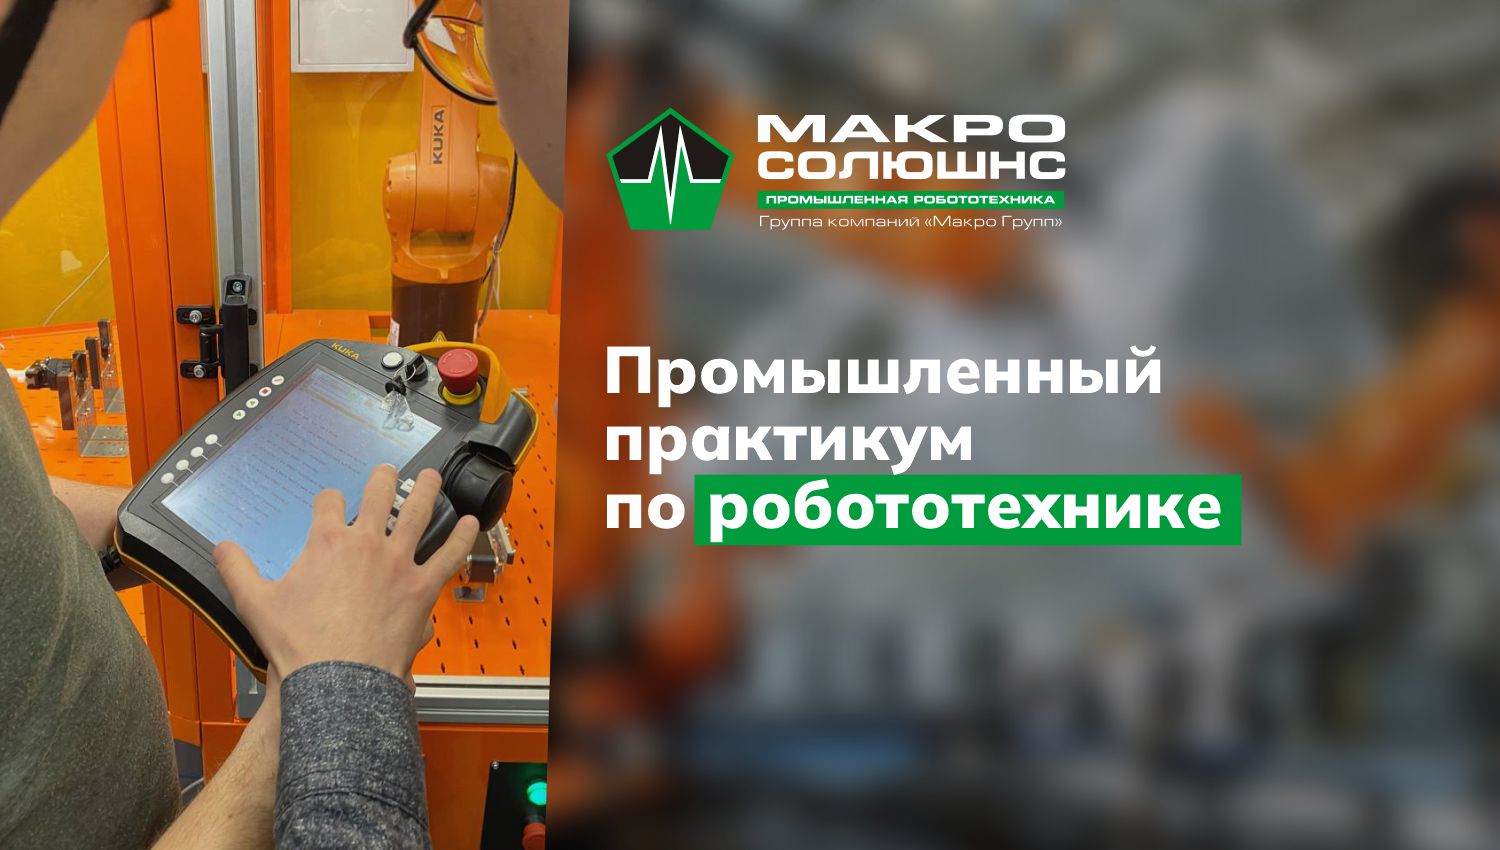 Практикум по промышленной робототехнике в Санкт-Петербурге